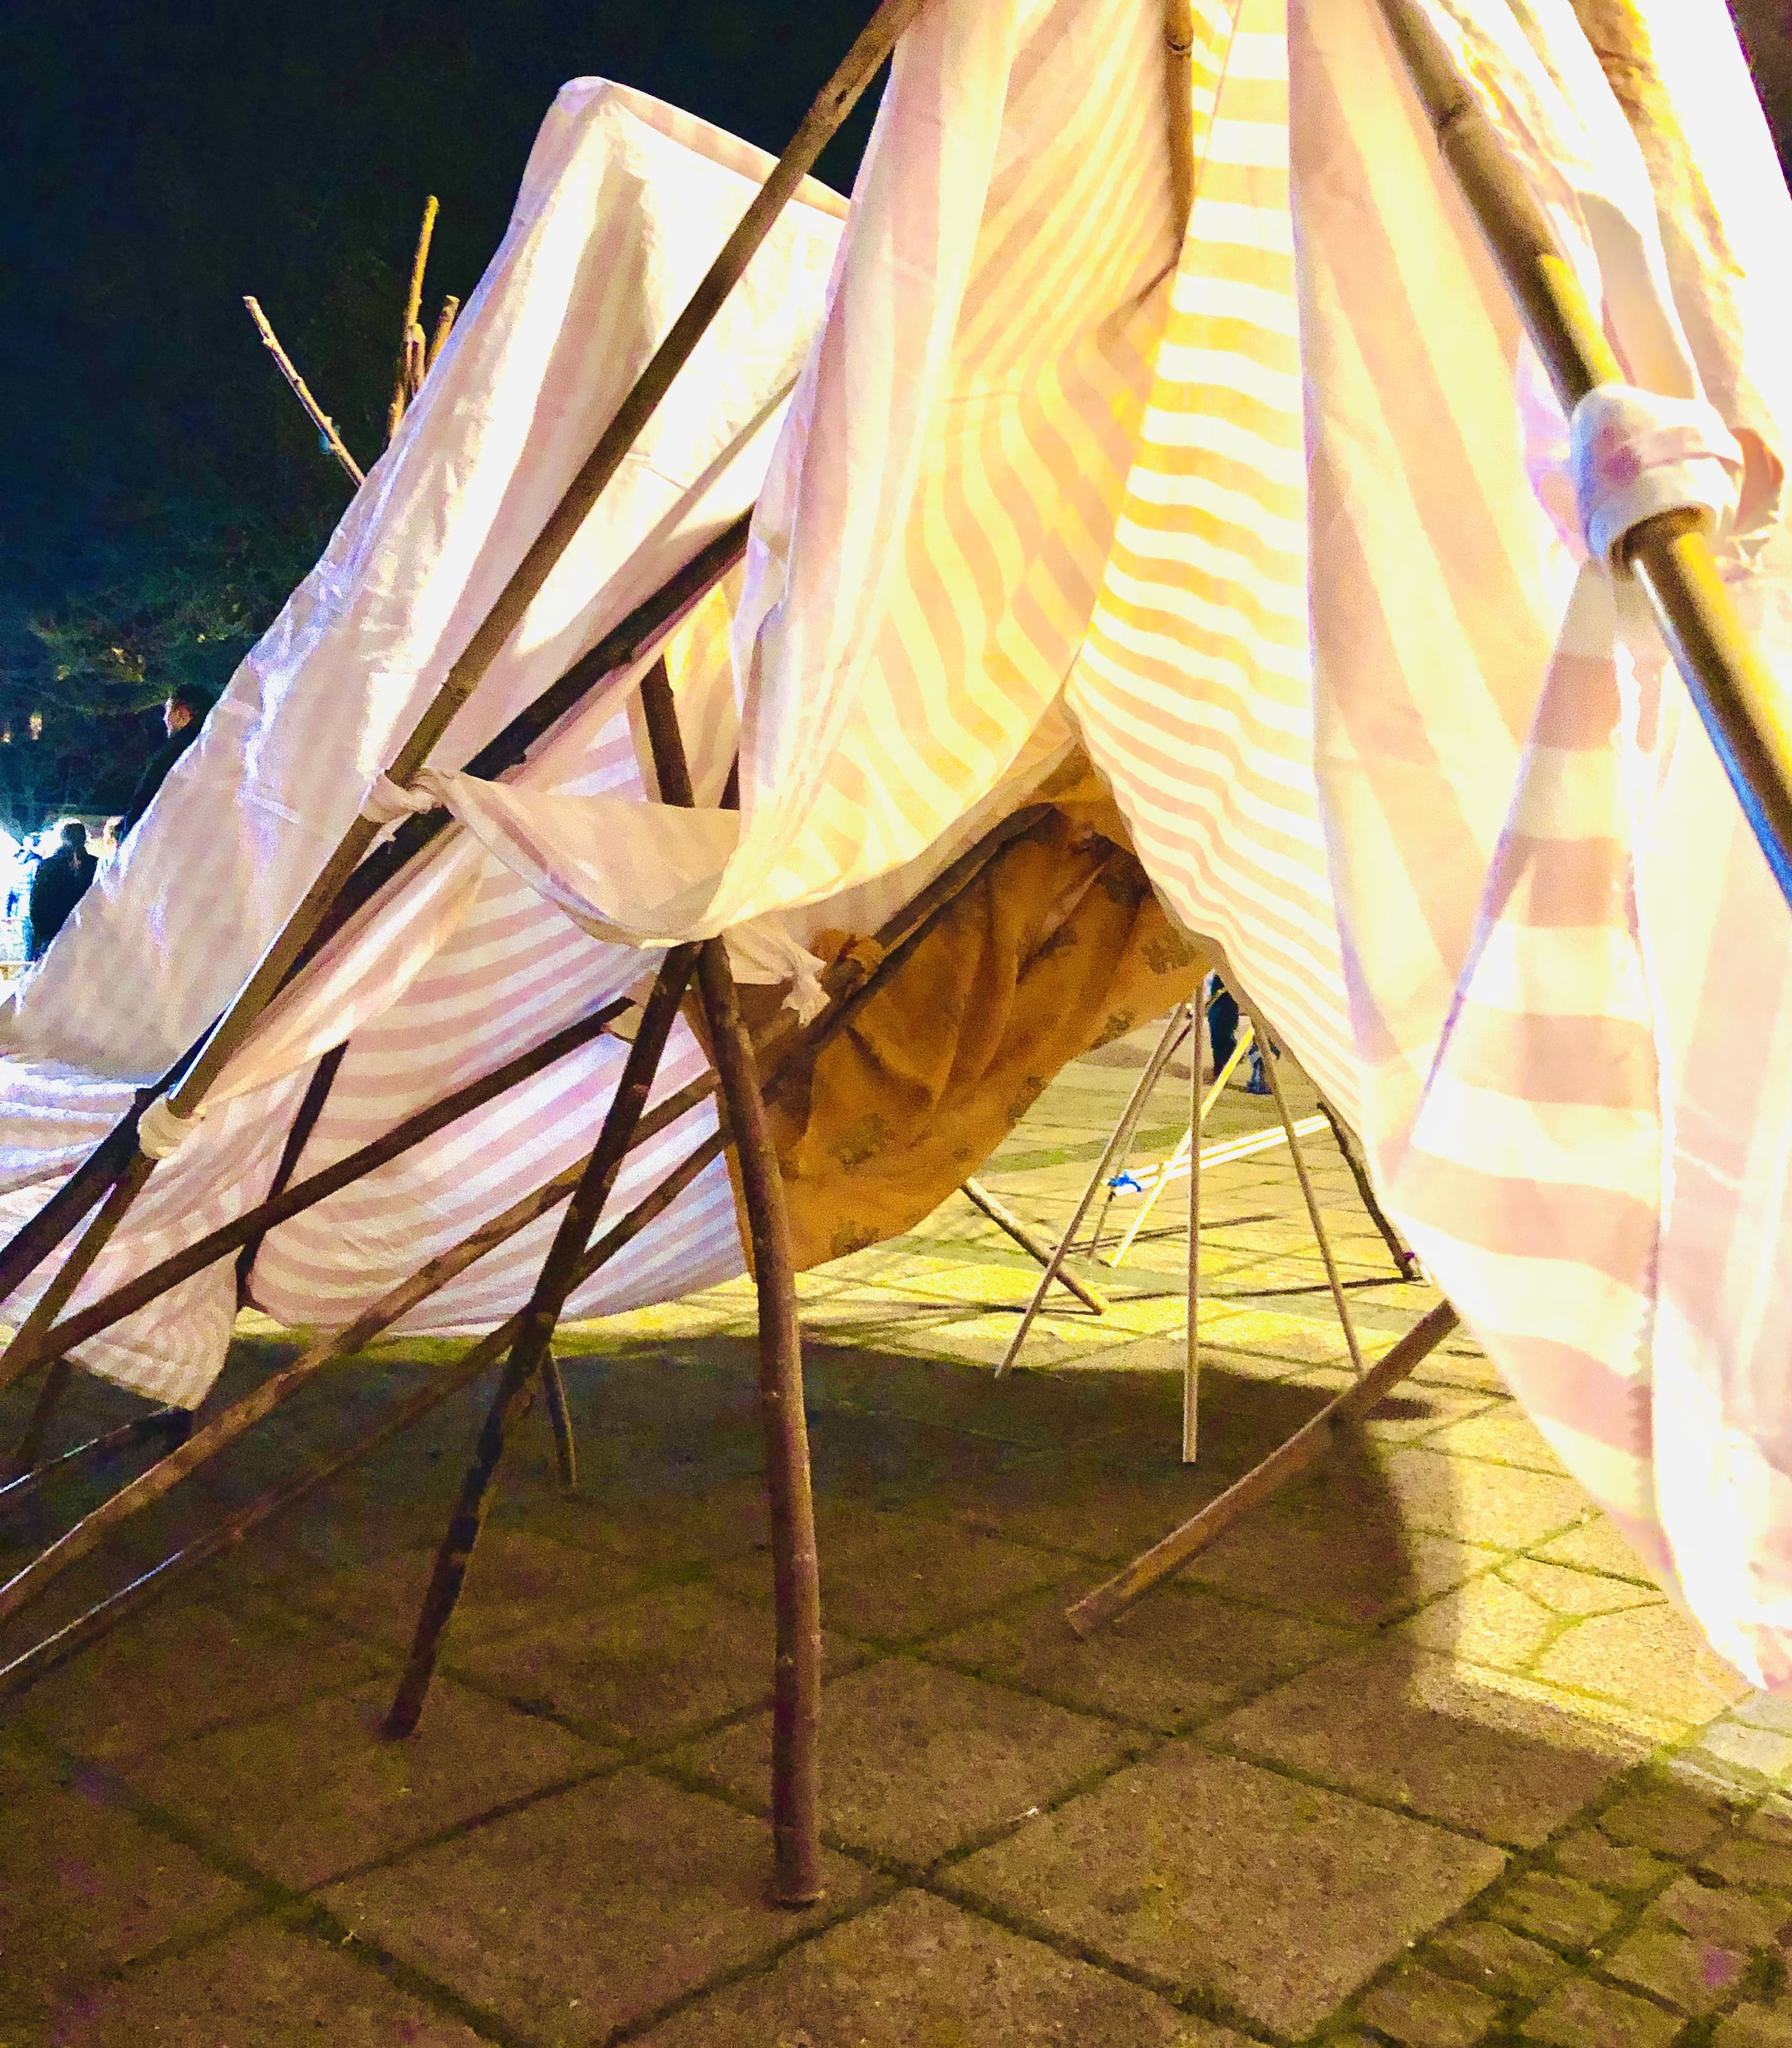 Enkla tält byggda av träpinnar och tyg. Ett är gult och ett är rosa.